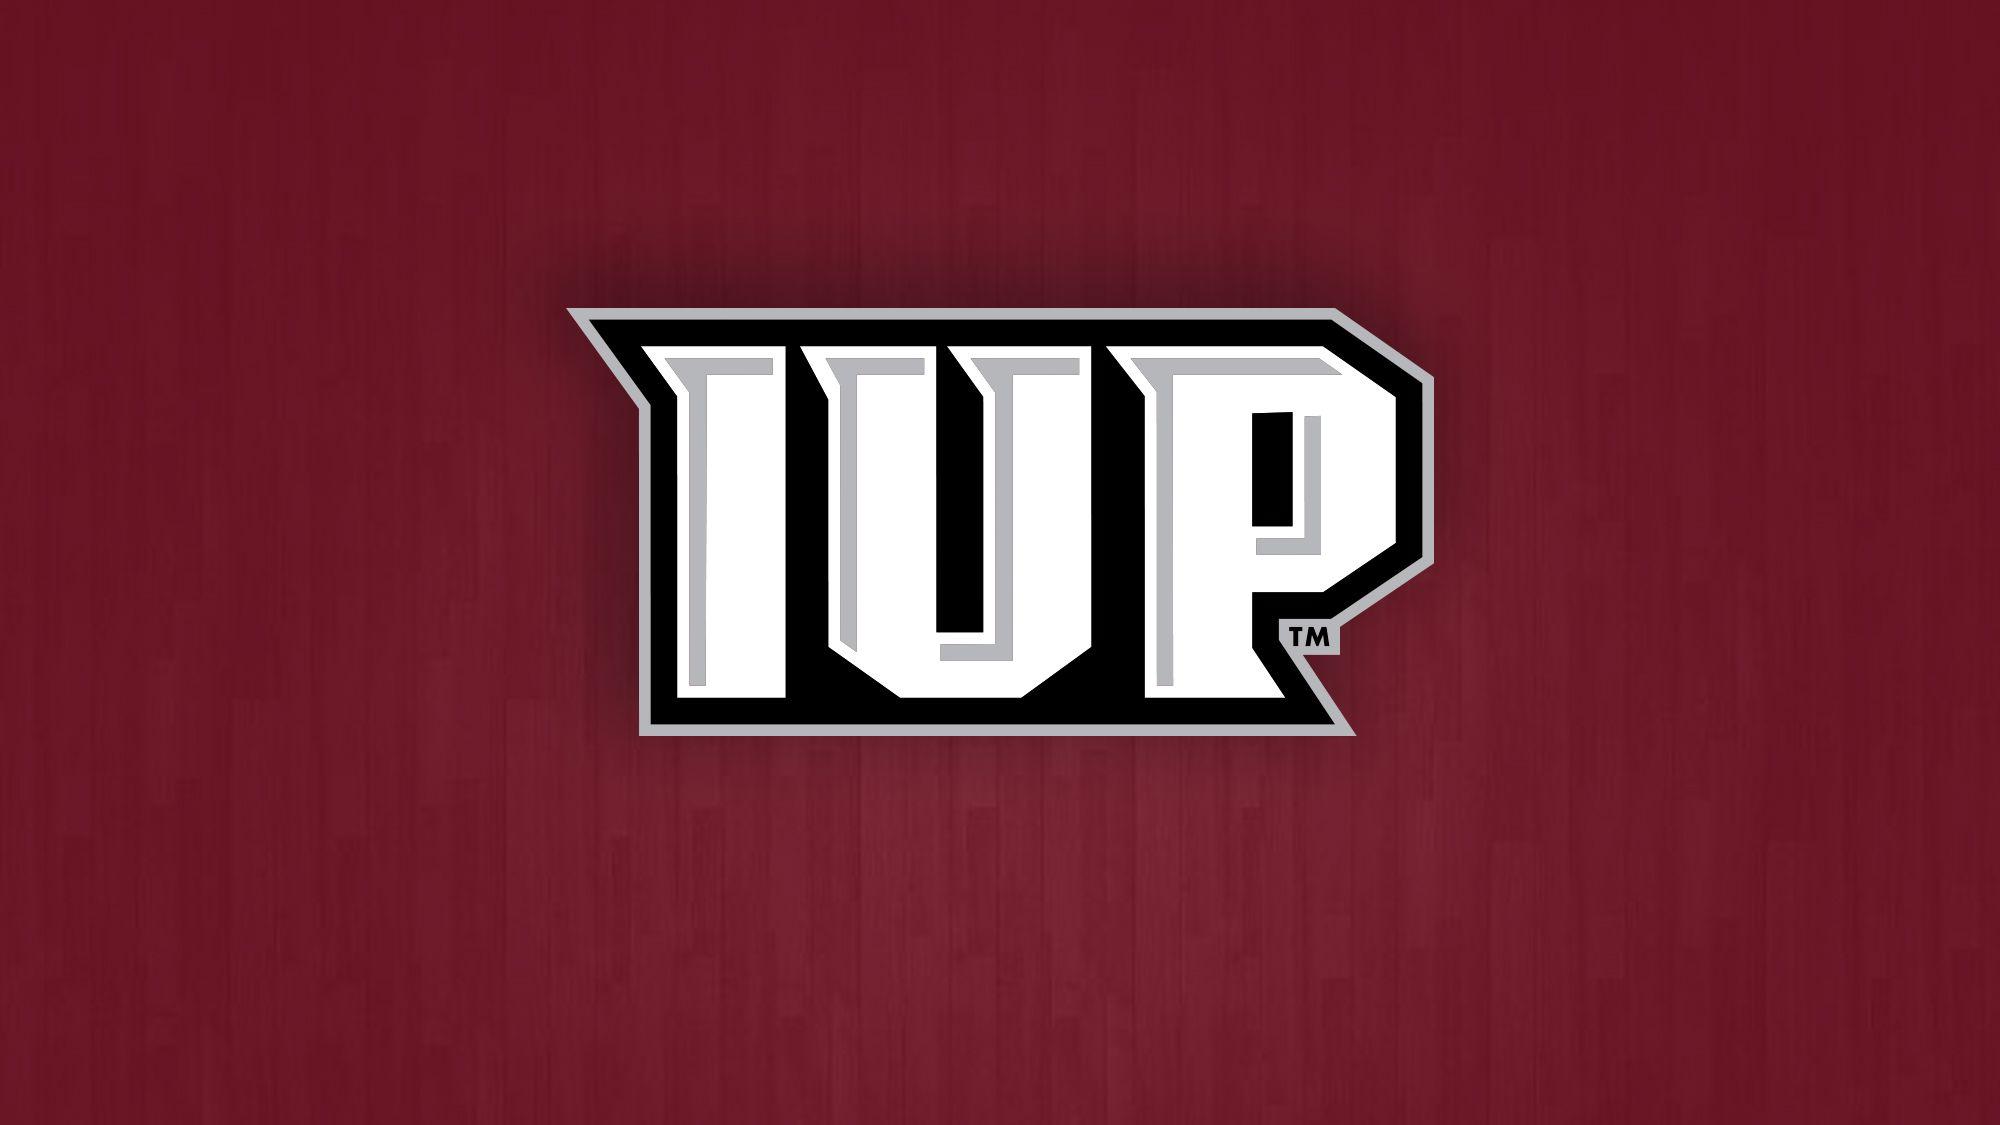 IUP Logo - Stamp Scores 18 in Return as IUP's Upset Bid Falls Short to No. 3